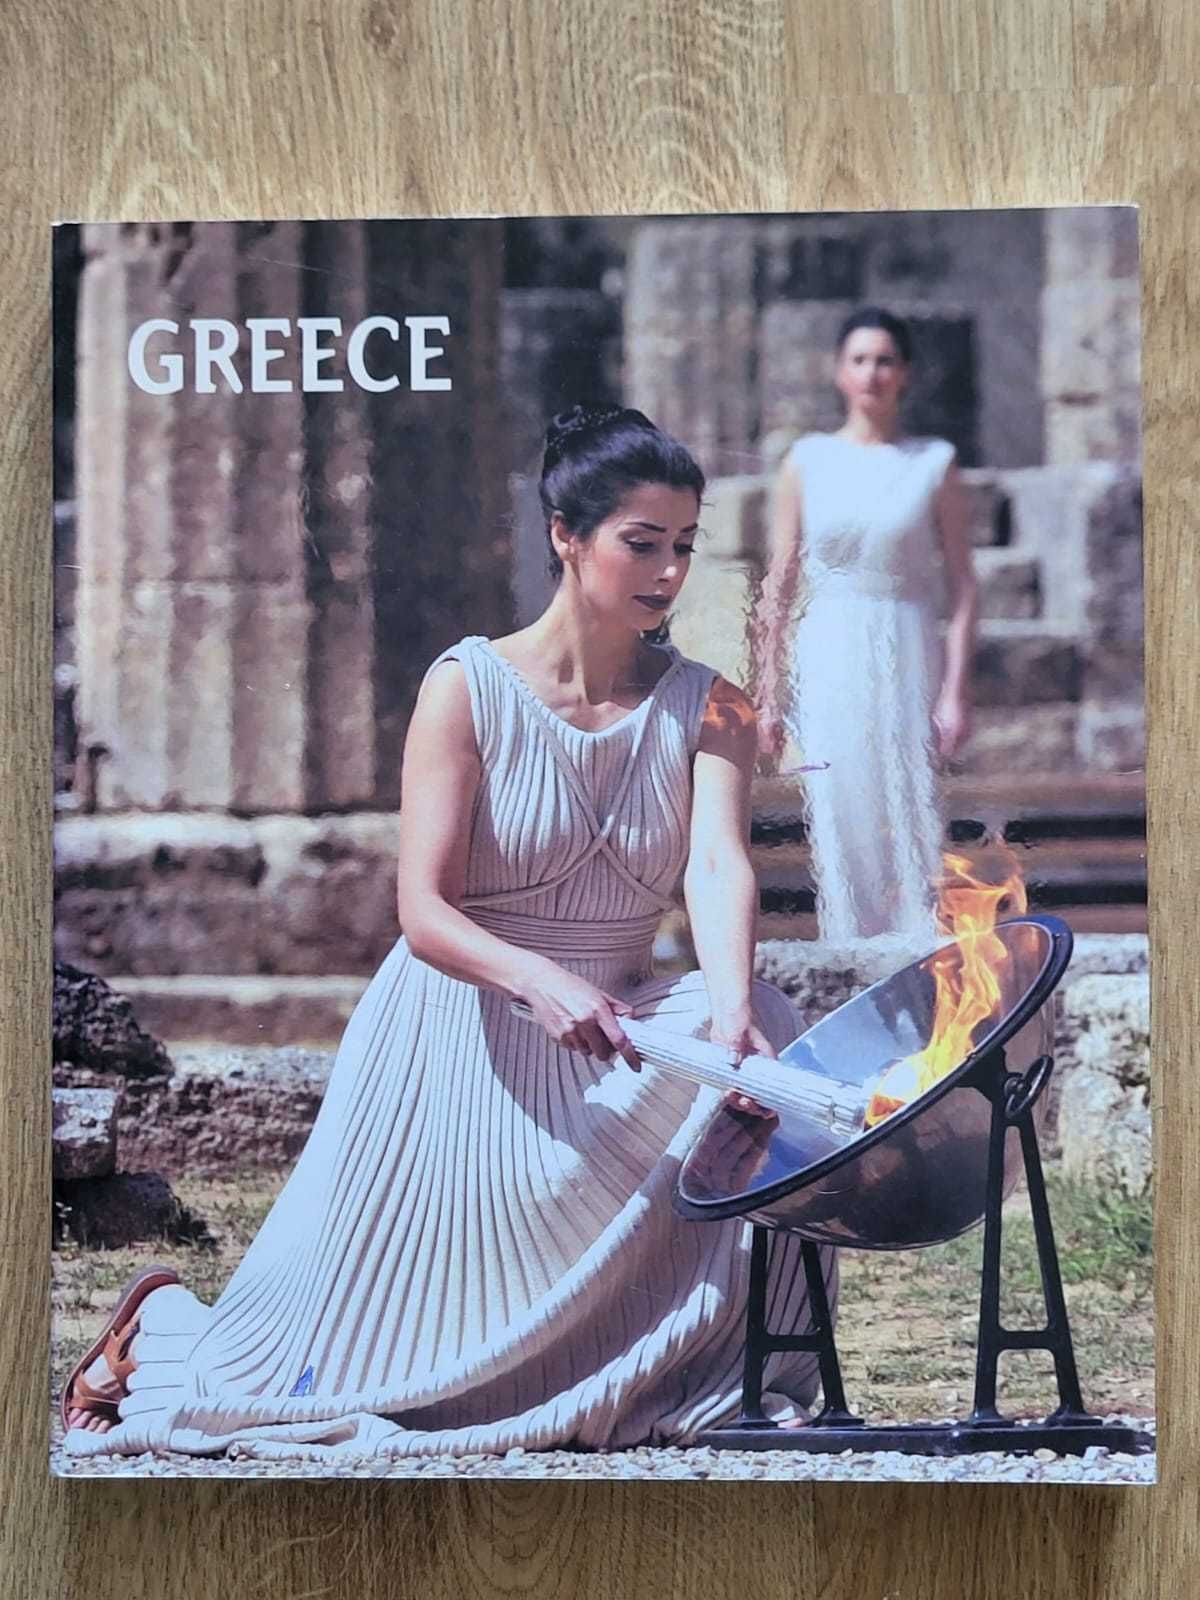 Greece by Irene Fragiadaki